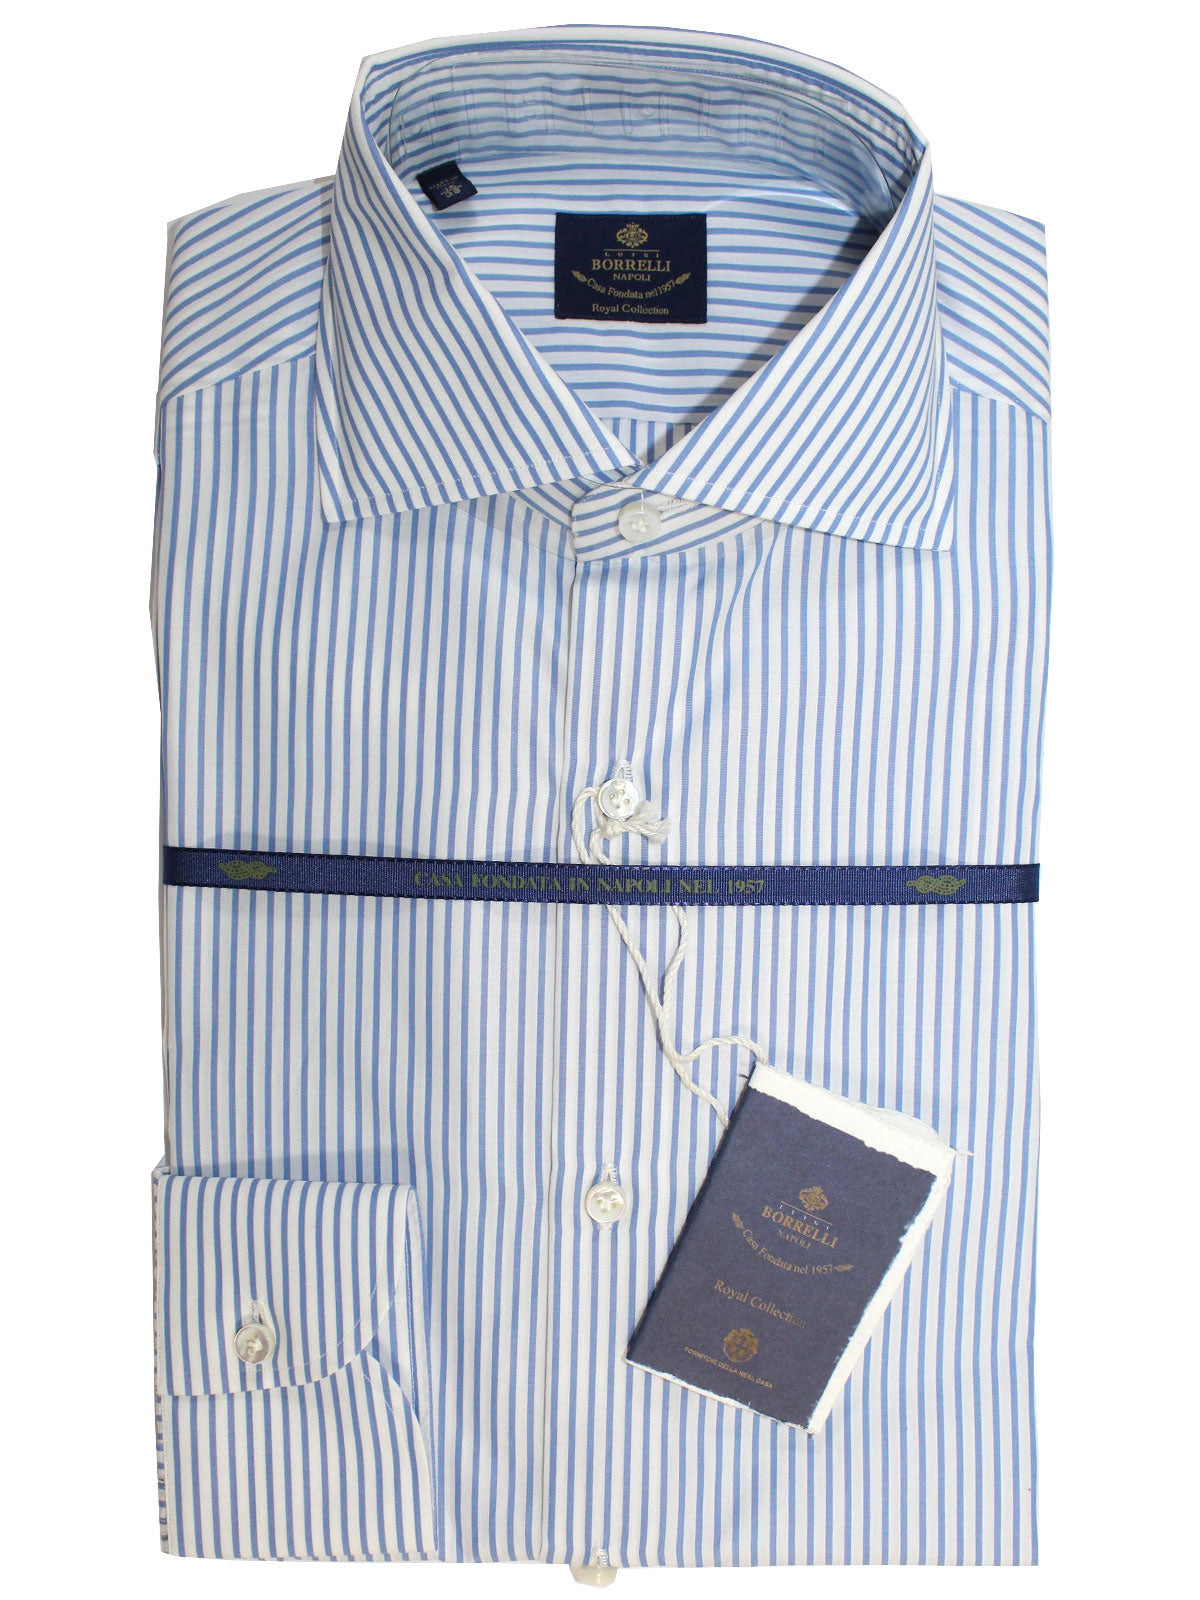 Luigi Borrelli Dress Shirt ROYAL COLLECTION White Blue Stripes